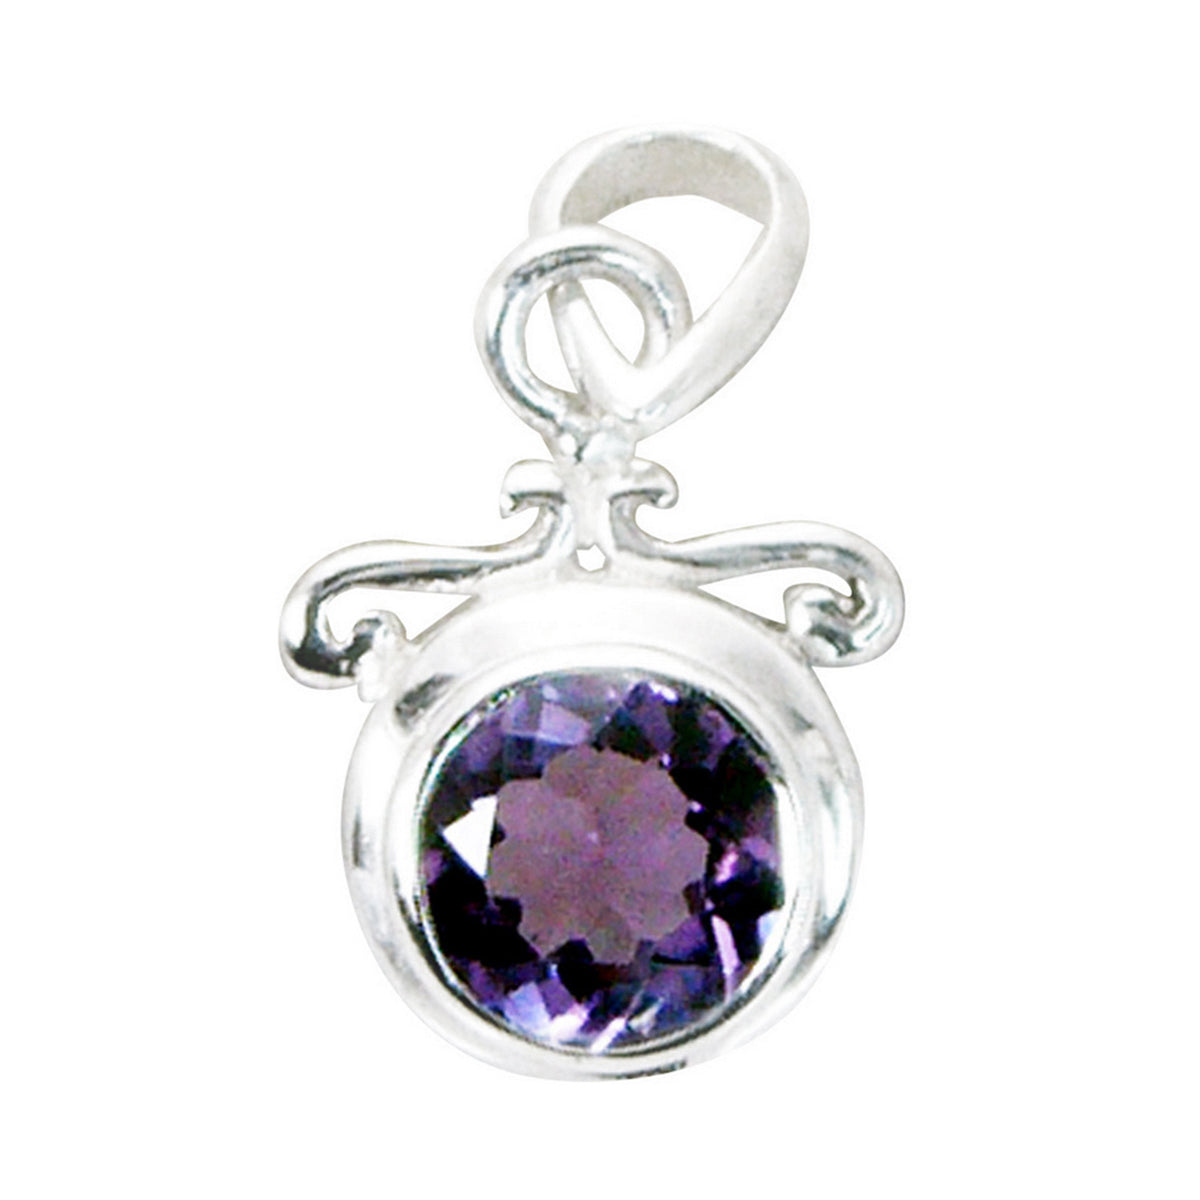 riyo великолепный драгоценный камень круглый граненый фиолетовый аметист 953 пробы серебряный кулон подарок на день рождения